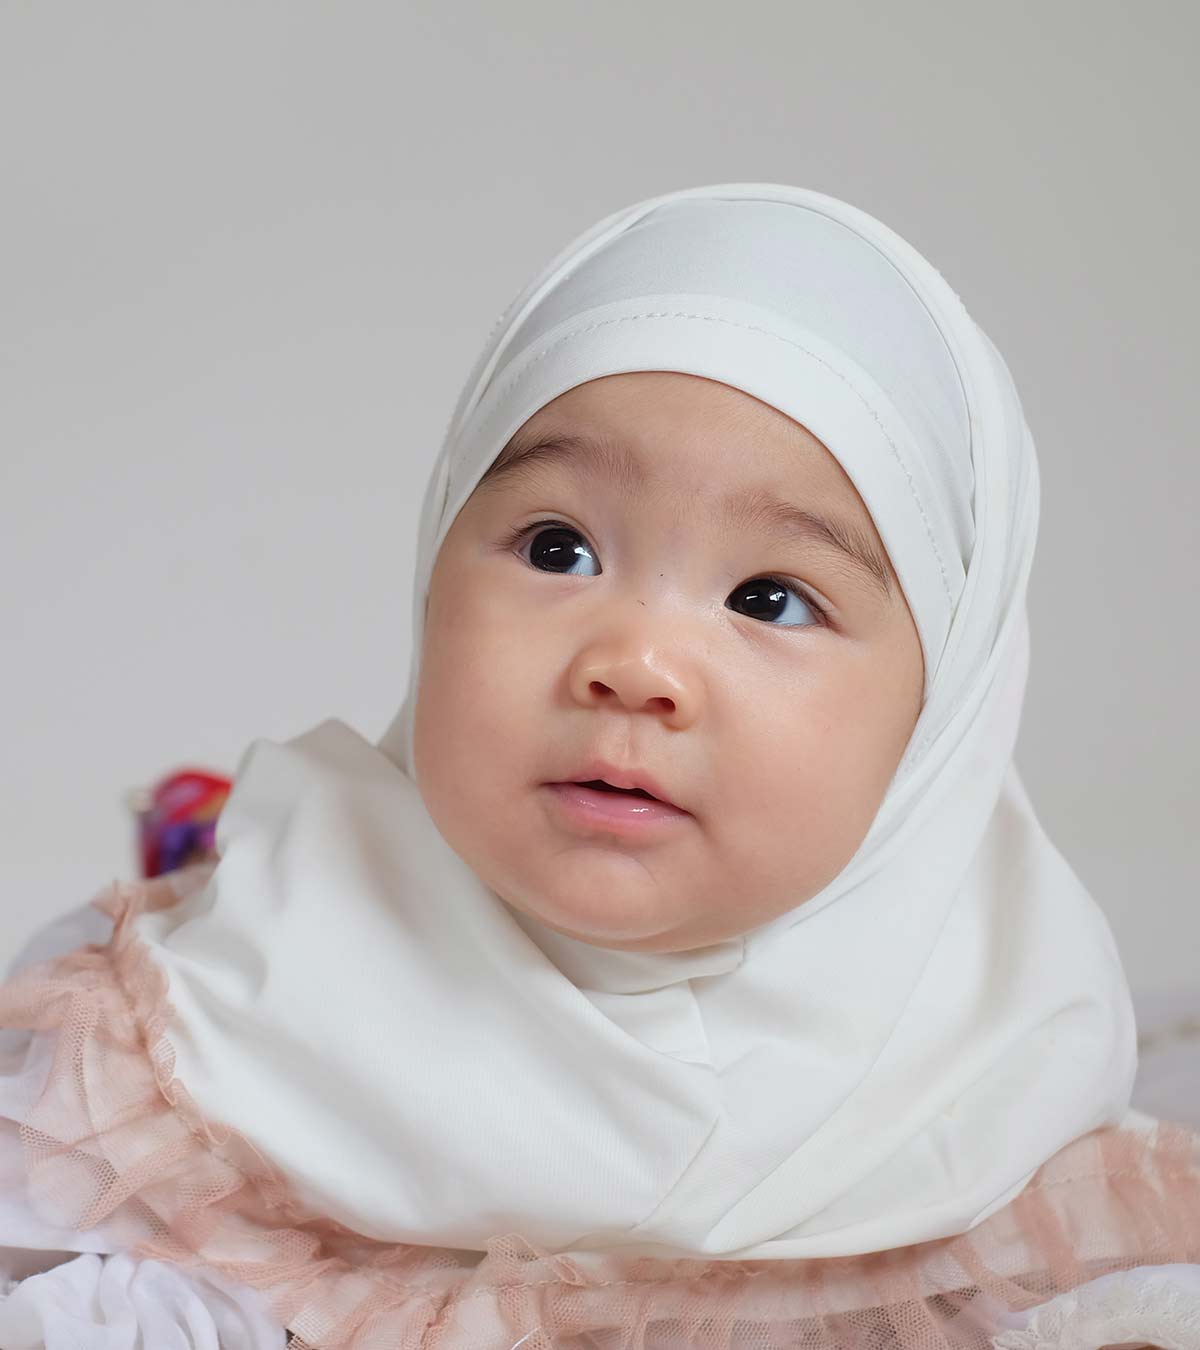 Имена девочек мусульманские современные и красивые редкие. Красивые мусульманские девочки. Красивые имена мусурман. Самые красивые имена для девочек мусульманские.